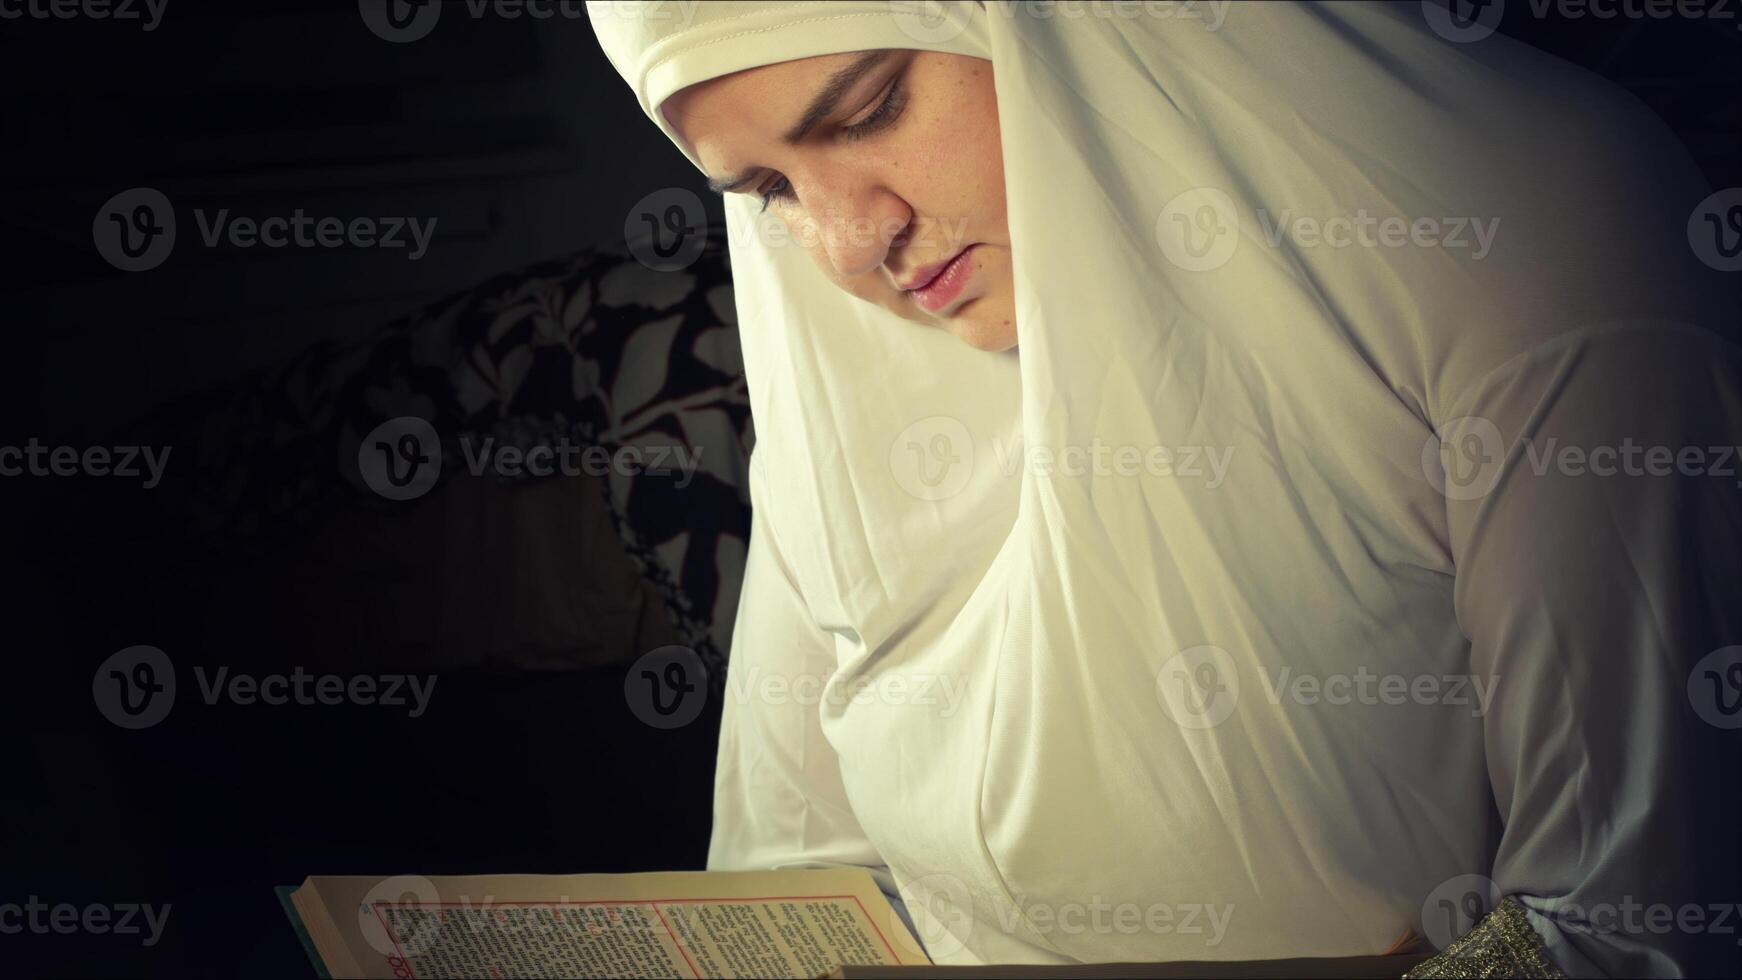 religioso musulmán mujer en oración atuendo foto